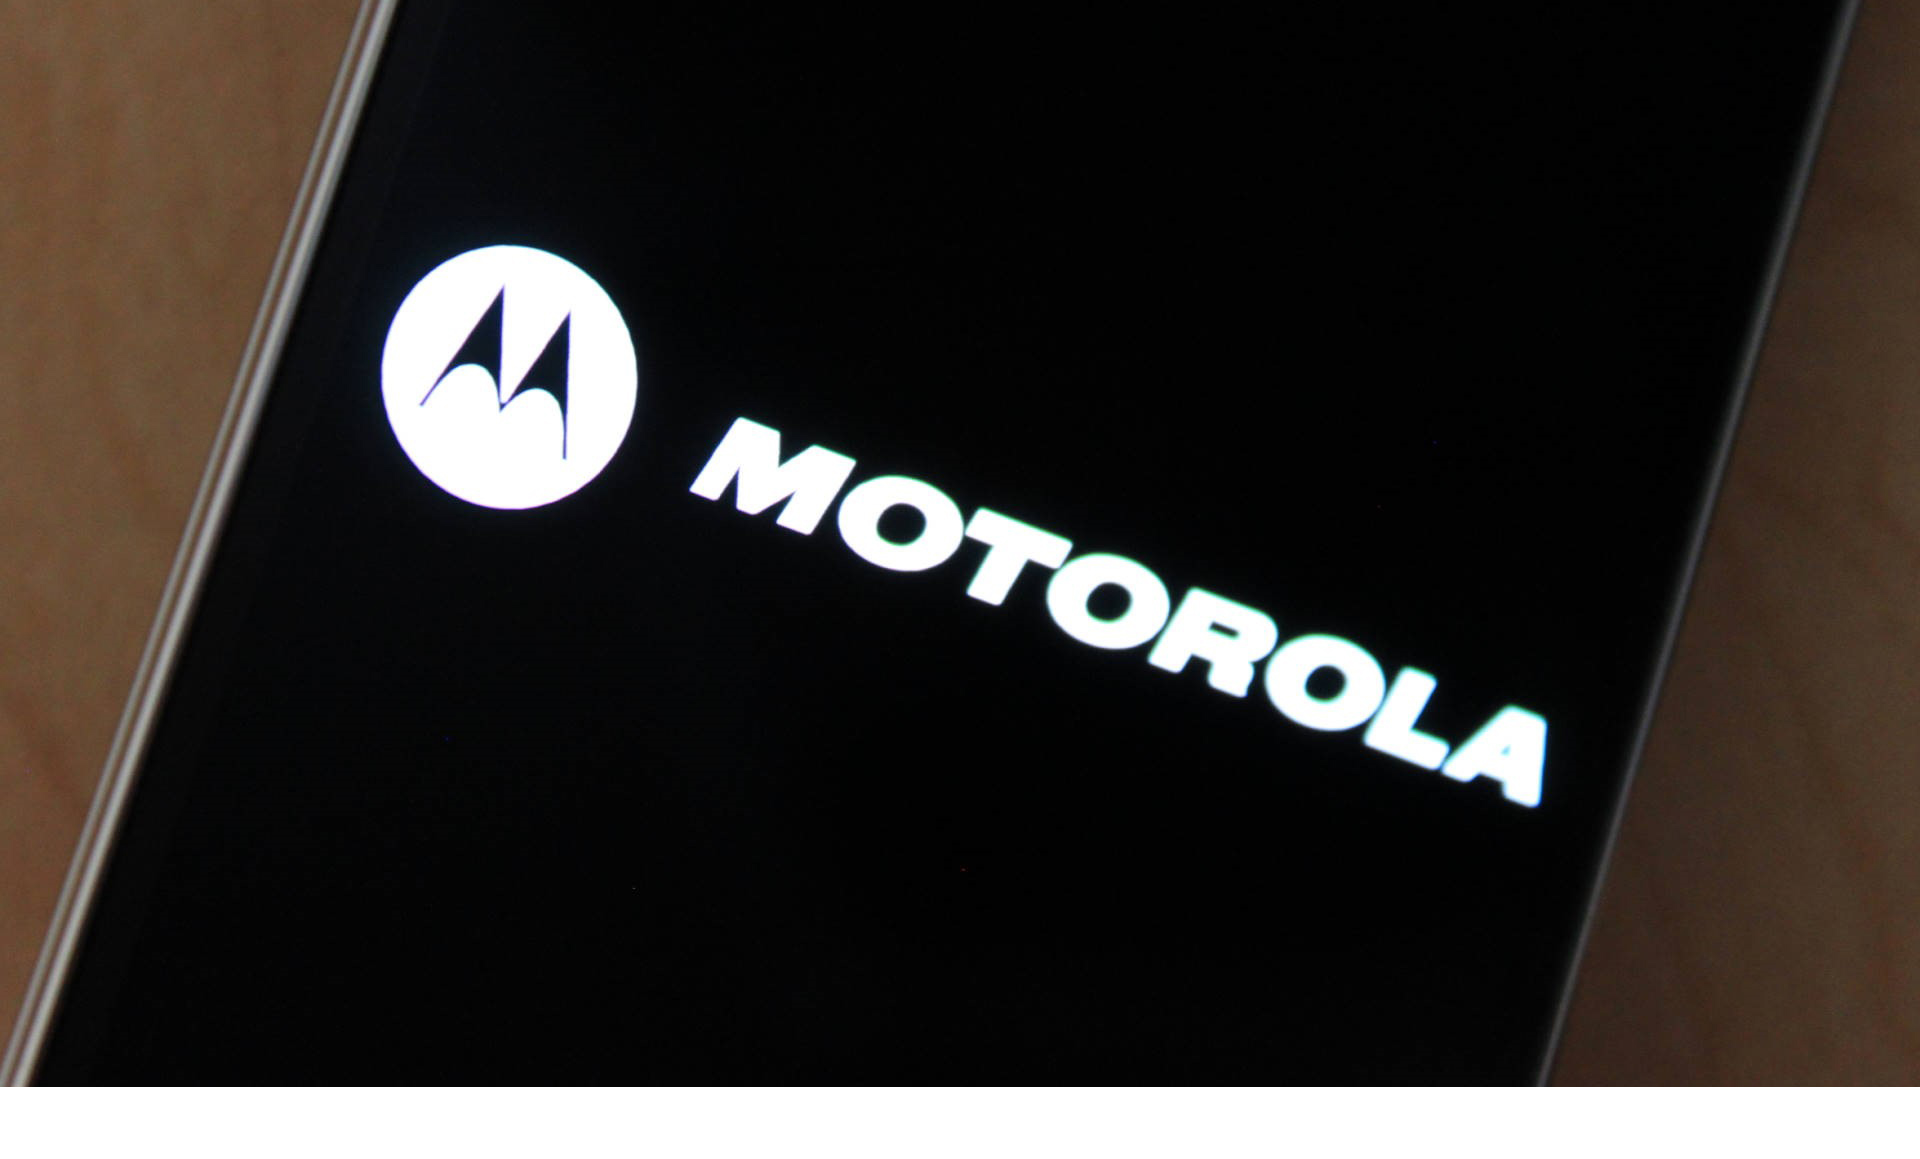 La garantía del smartphone Moto X Force es de 4 años contra roturas de pantallas